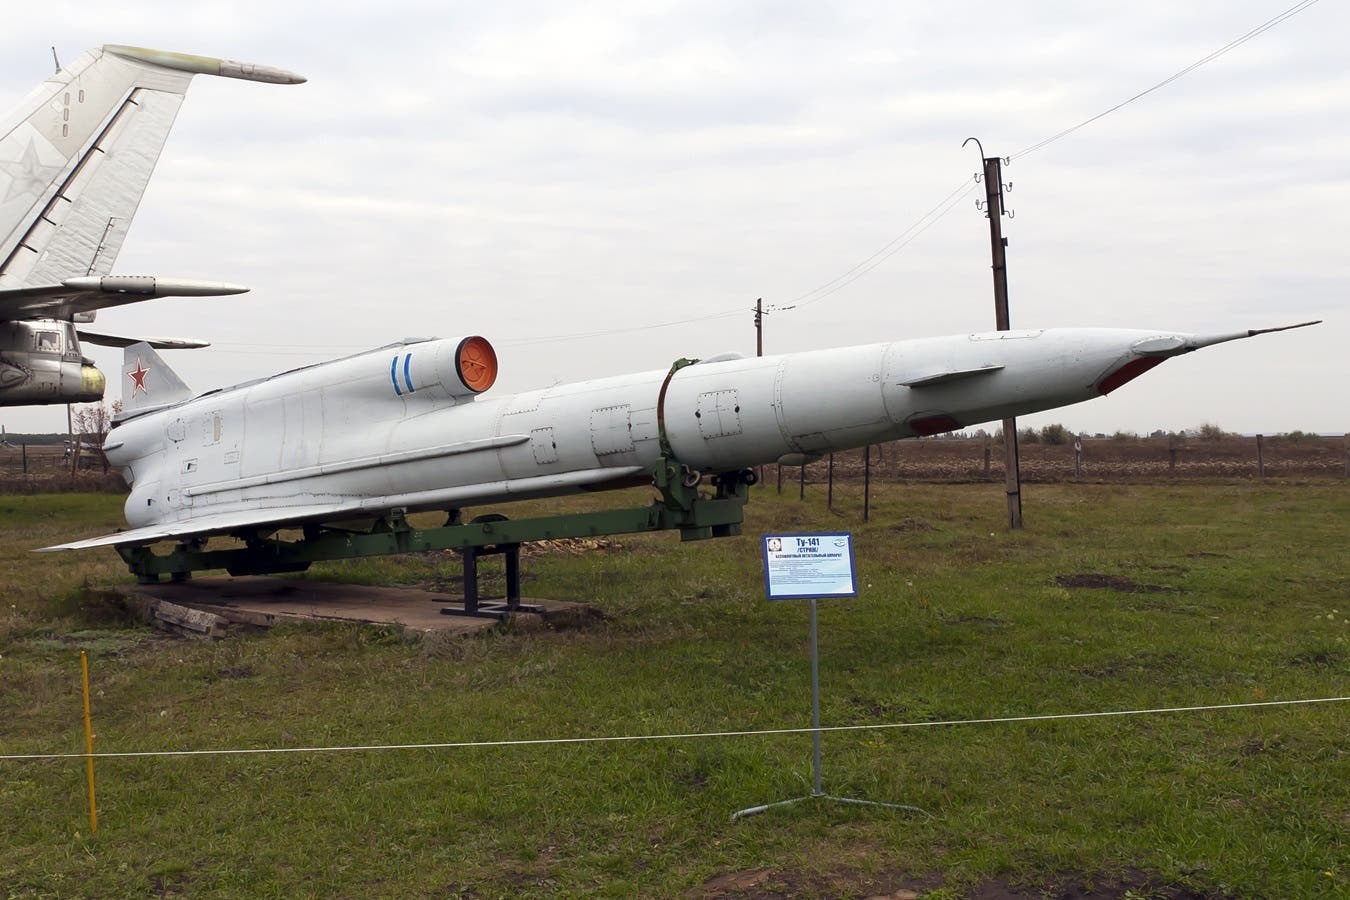 طائرة من طراز توبوليف تو. 141